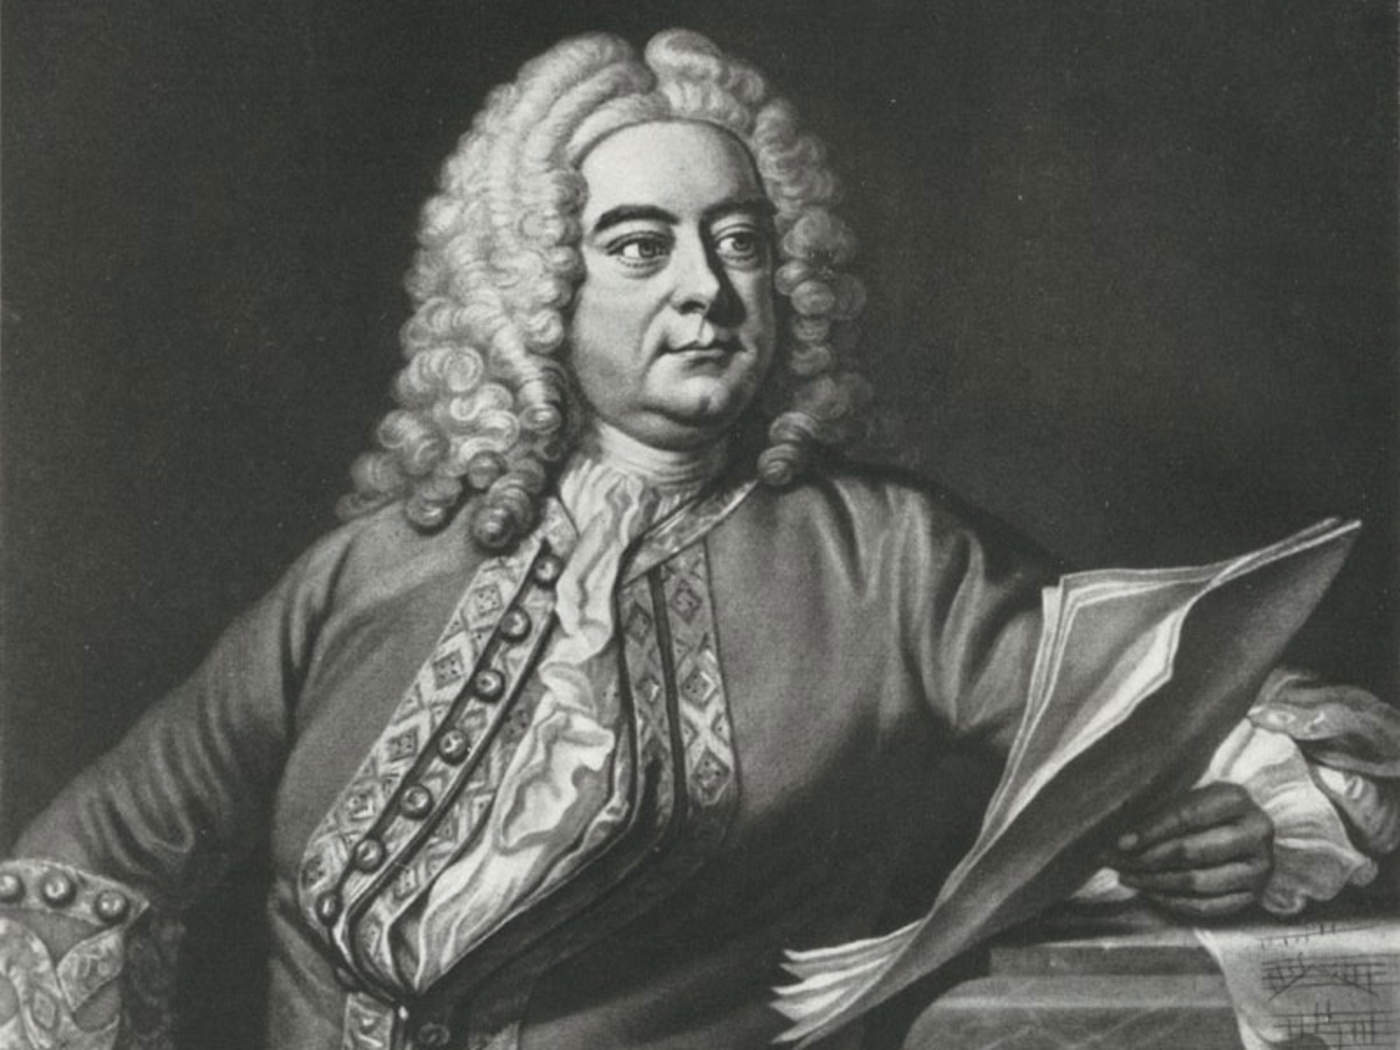 1685: Llega al mundo Georg Friedrich Händel, influyente compositor del Barroco